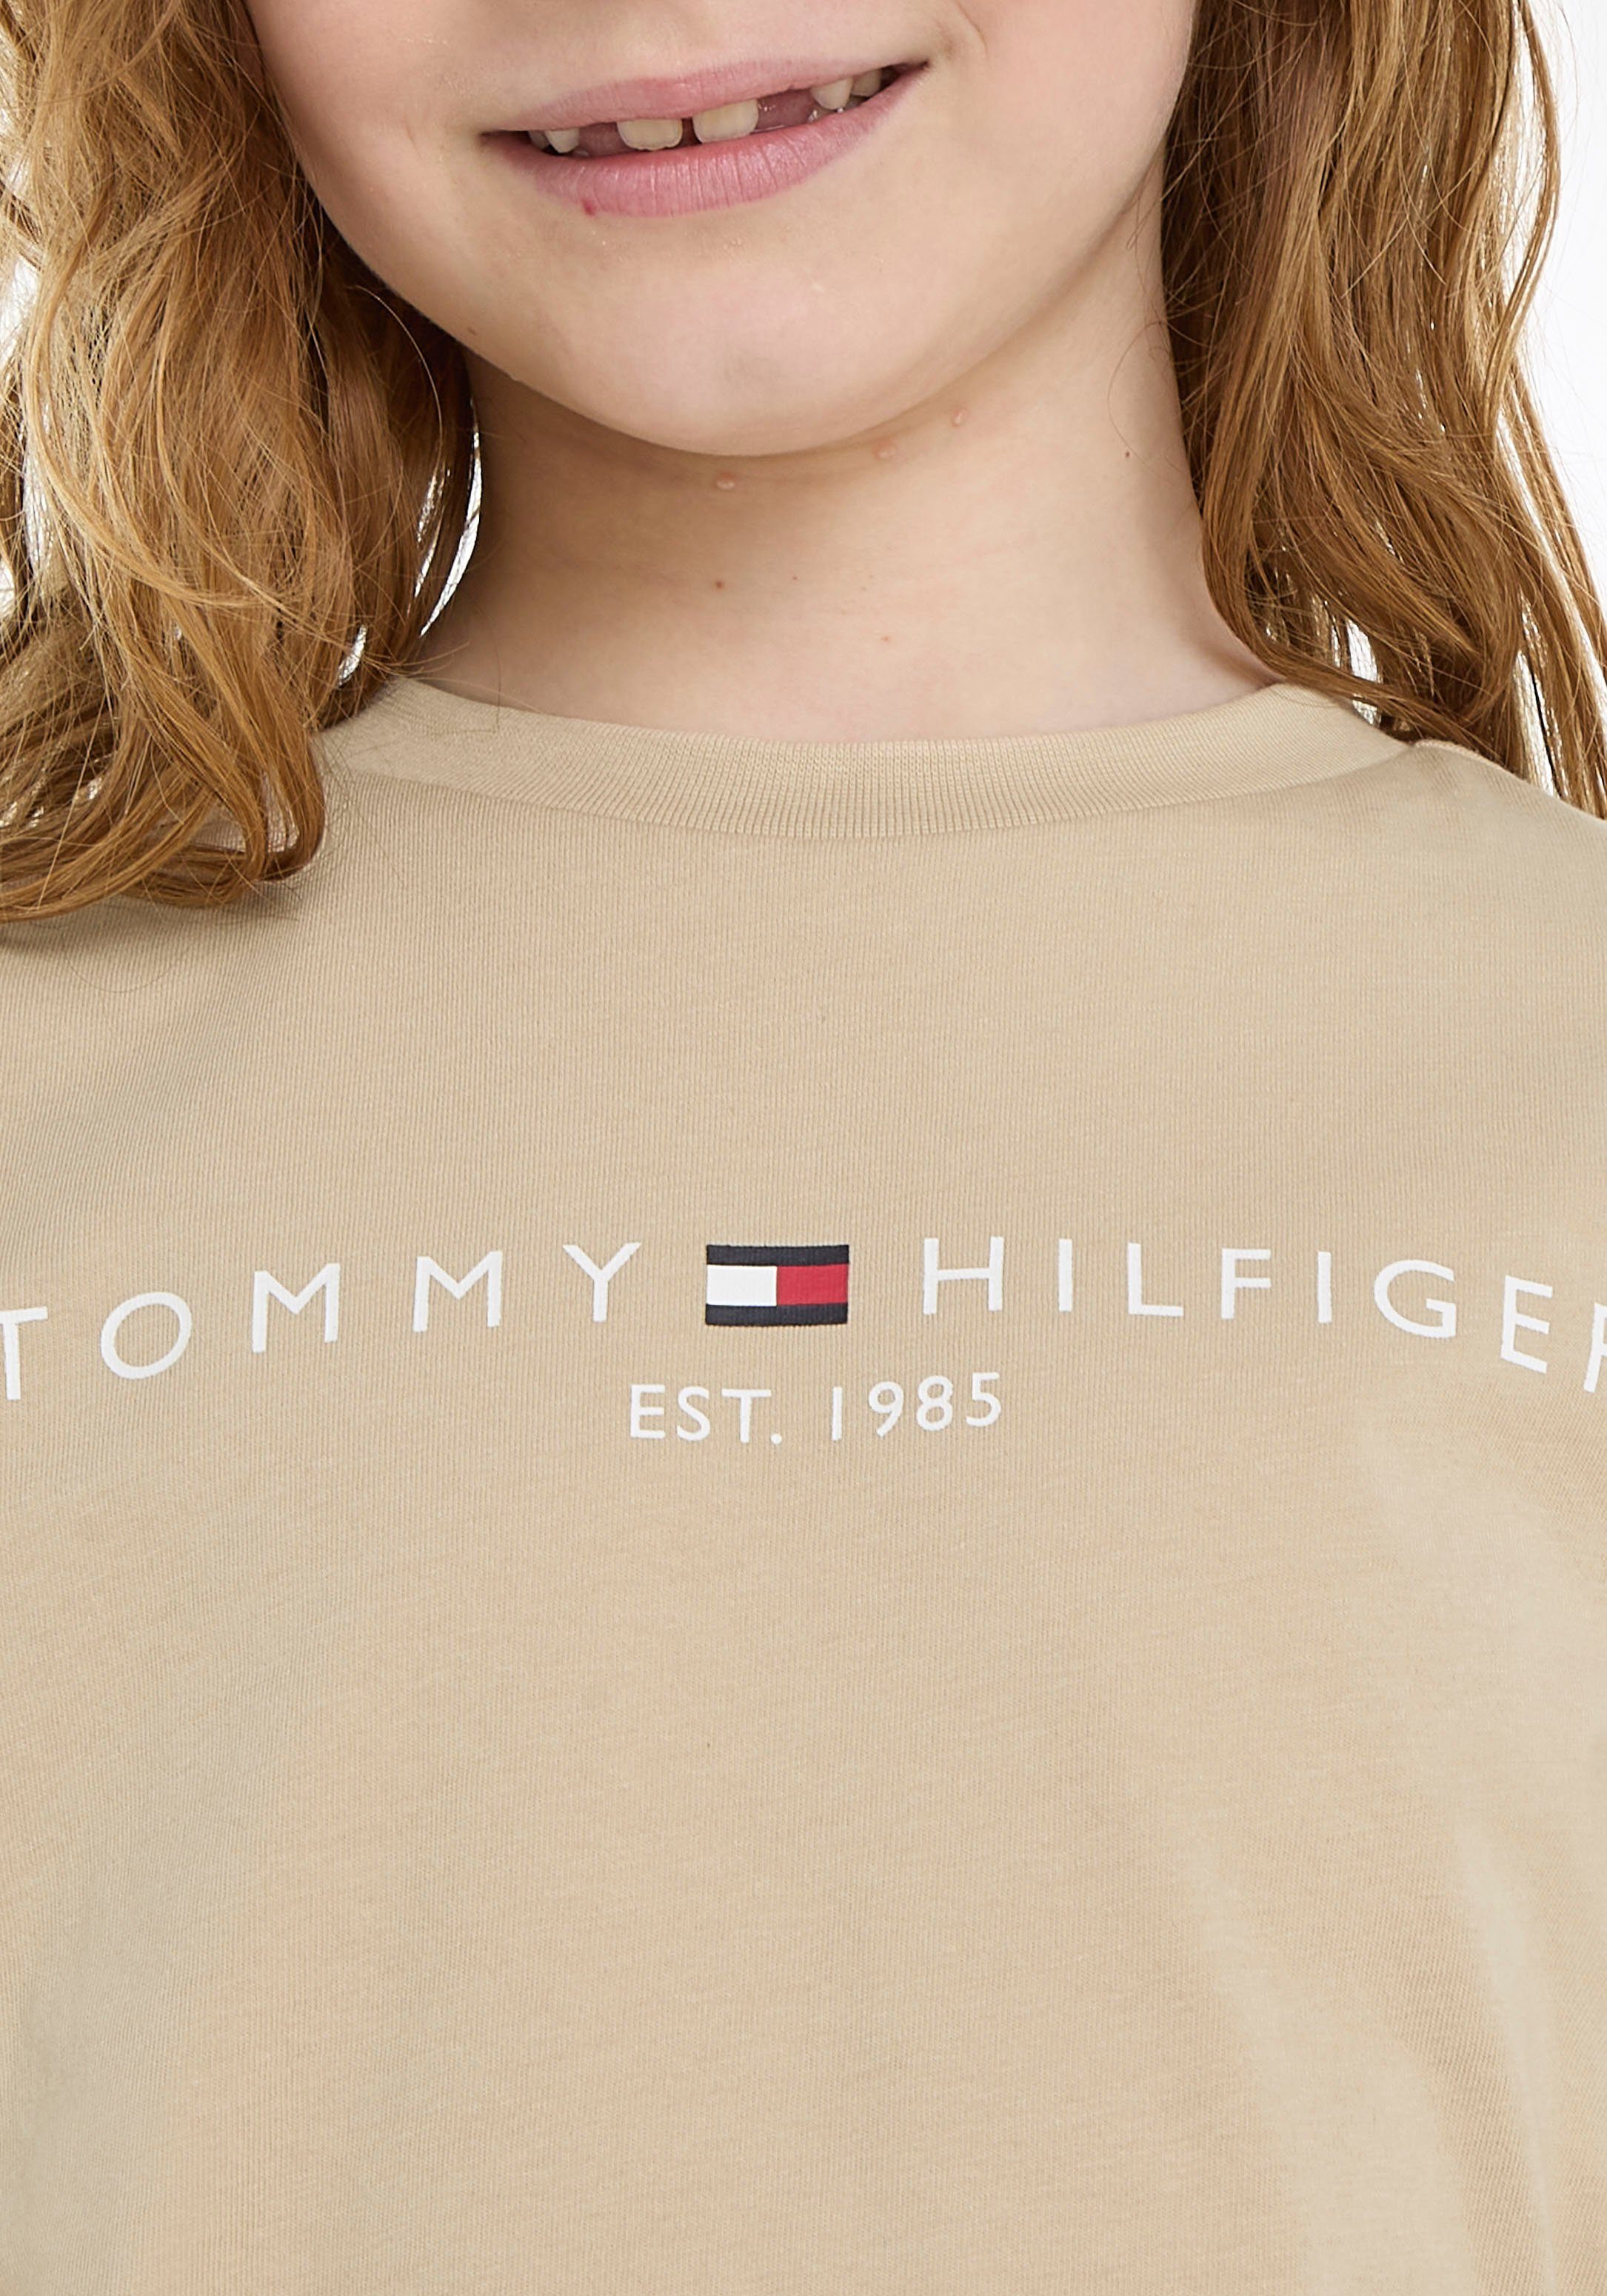 Tommy U S/S TEE White Logodruck T-Shirt Hilfiger mit Clay ESSENTIAL